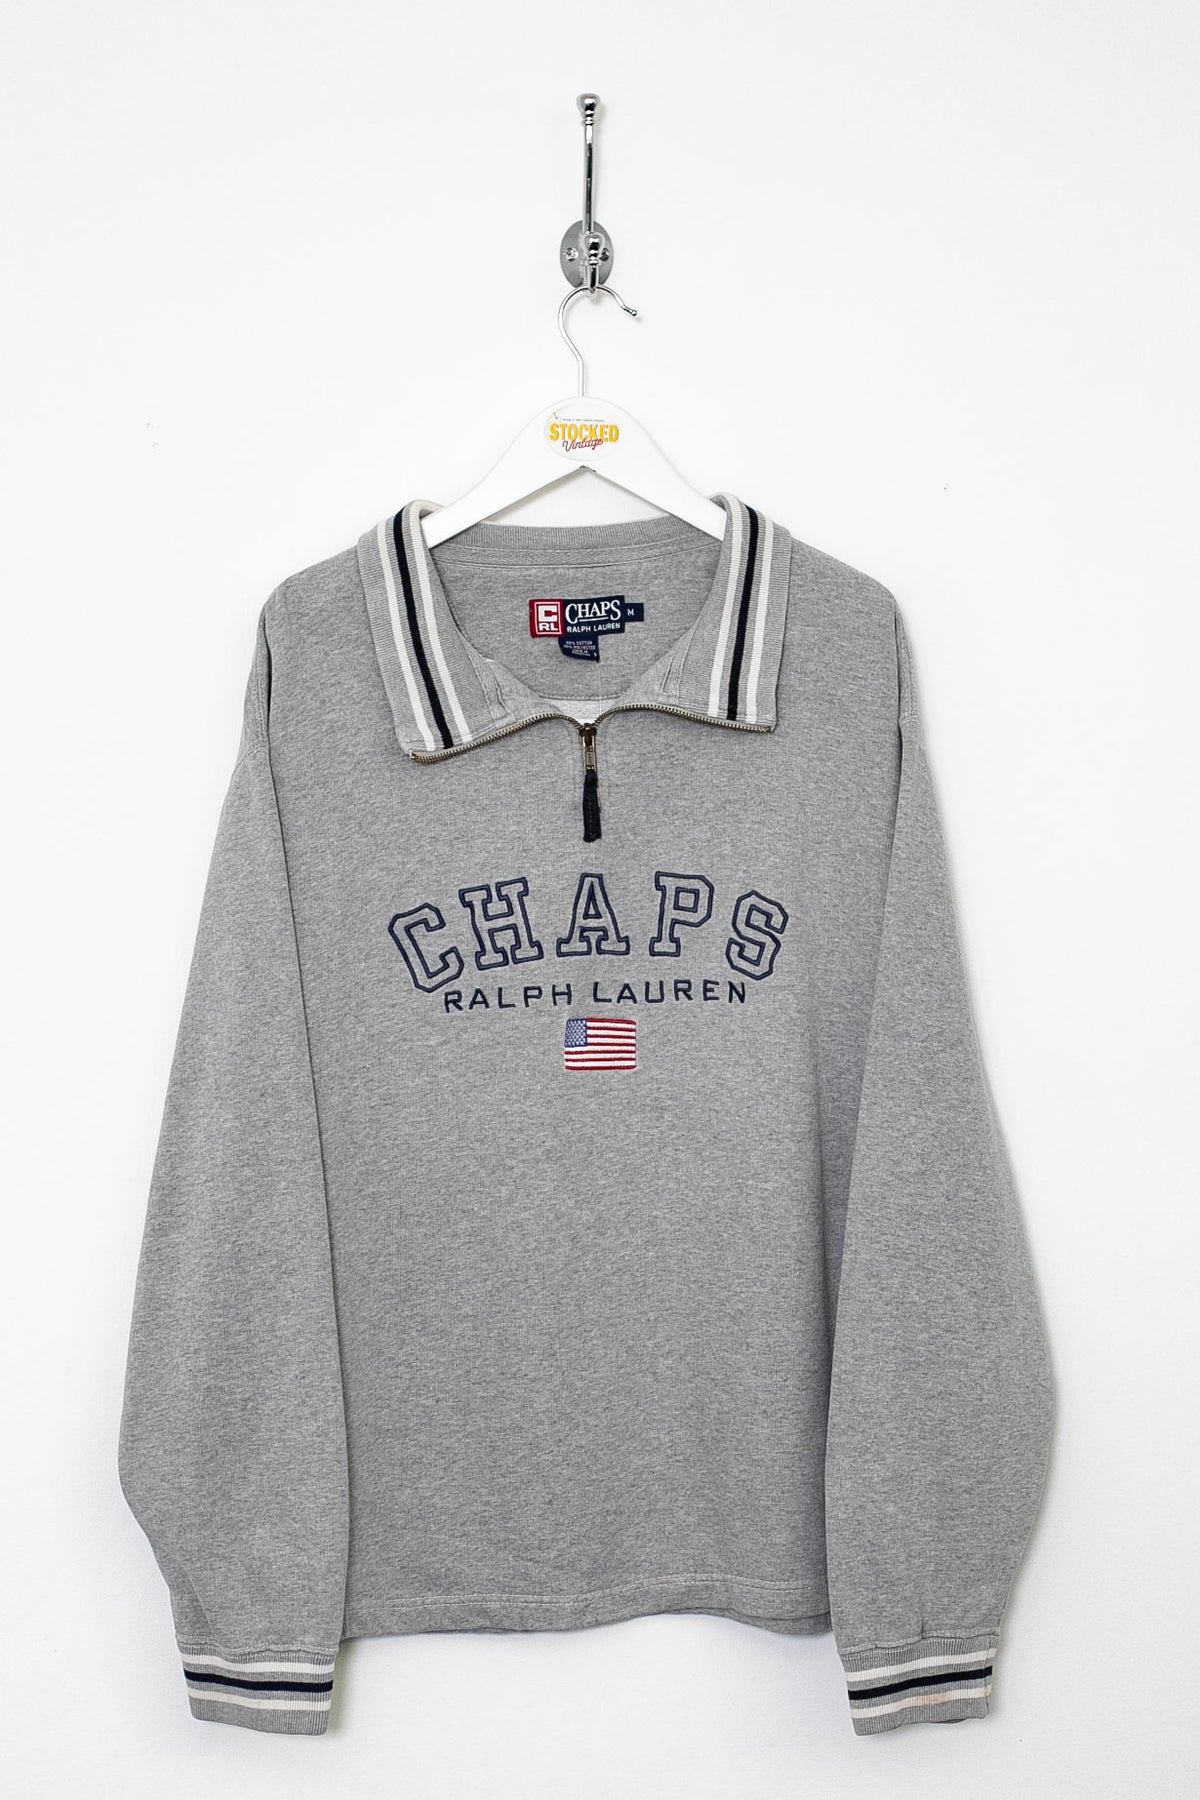 00s Ralph Lauren Chaps 1/4 Zip Sweatshirt (M)